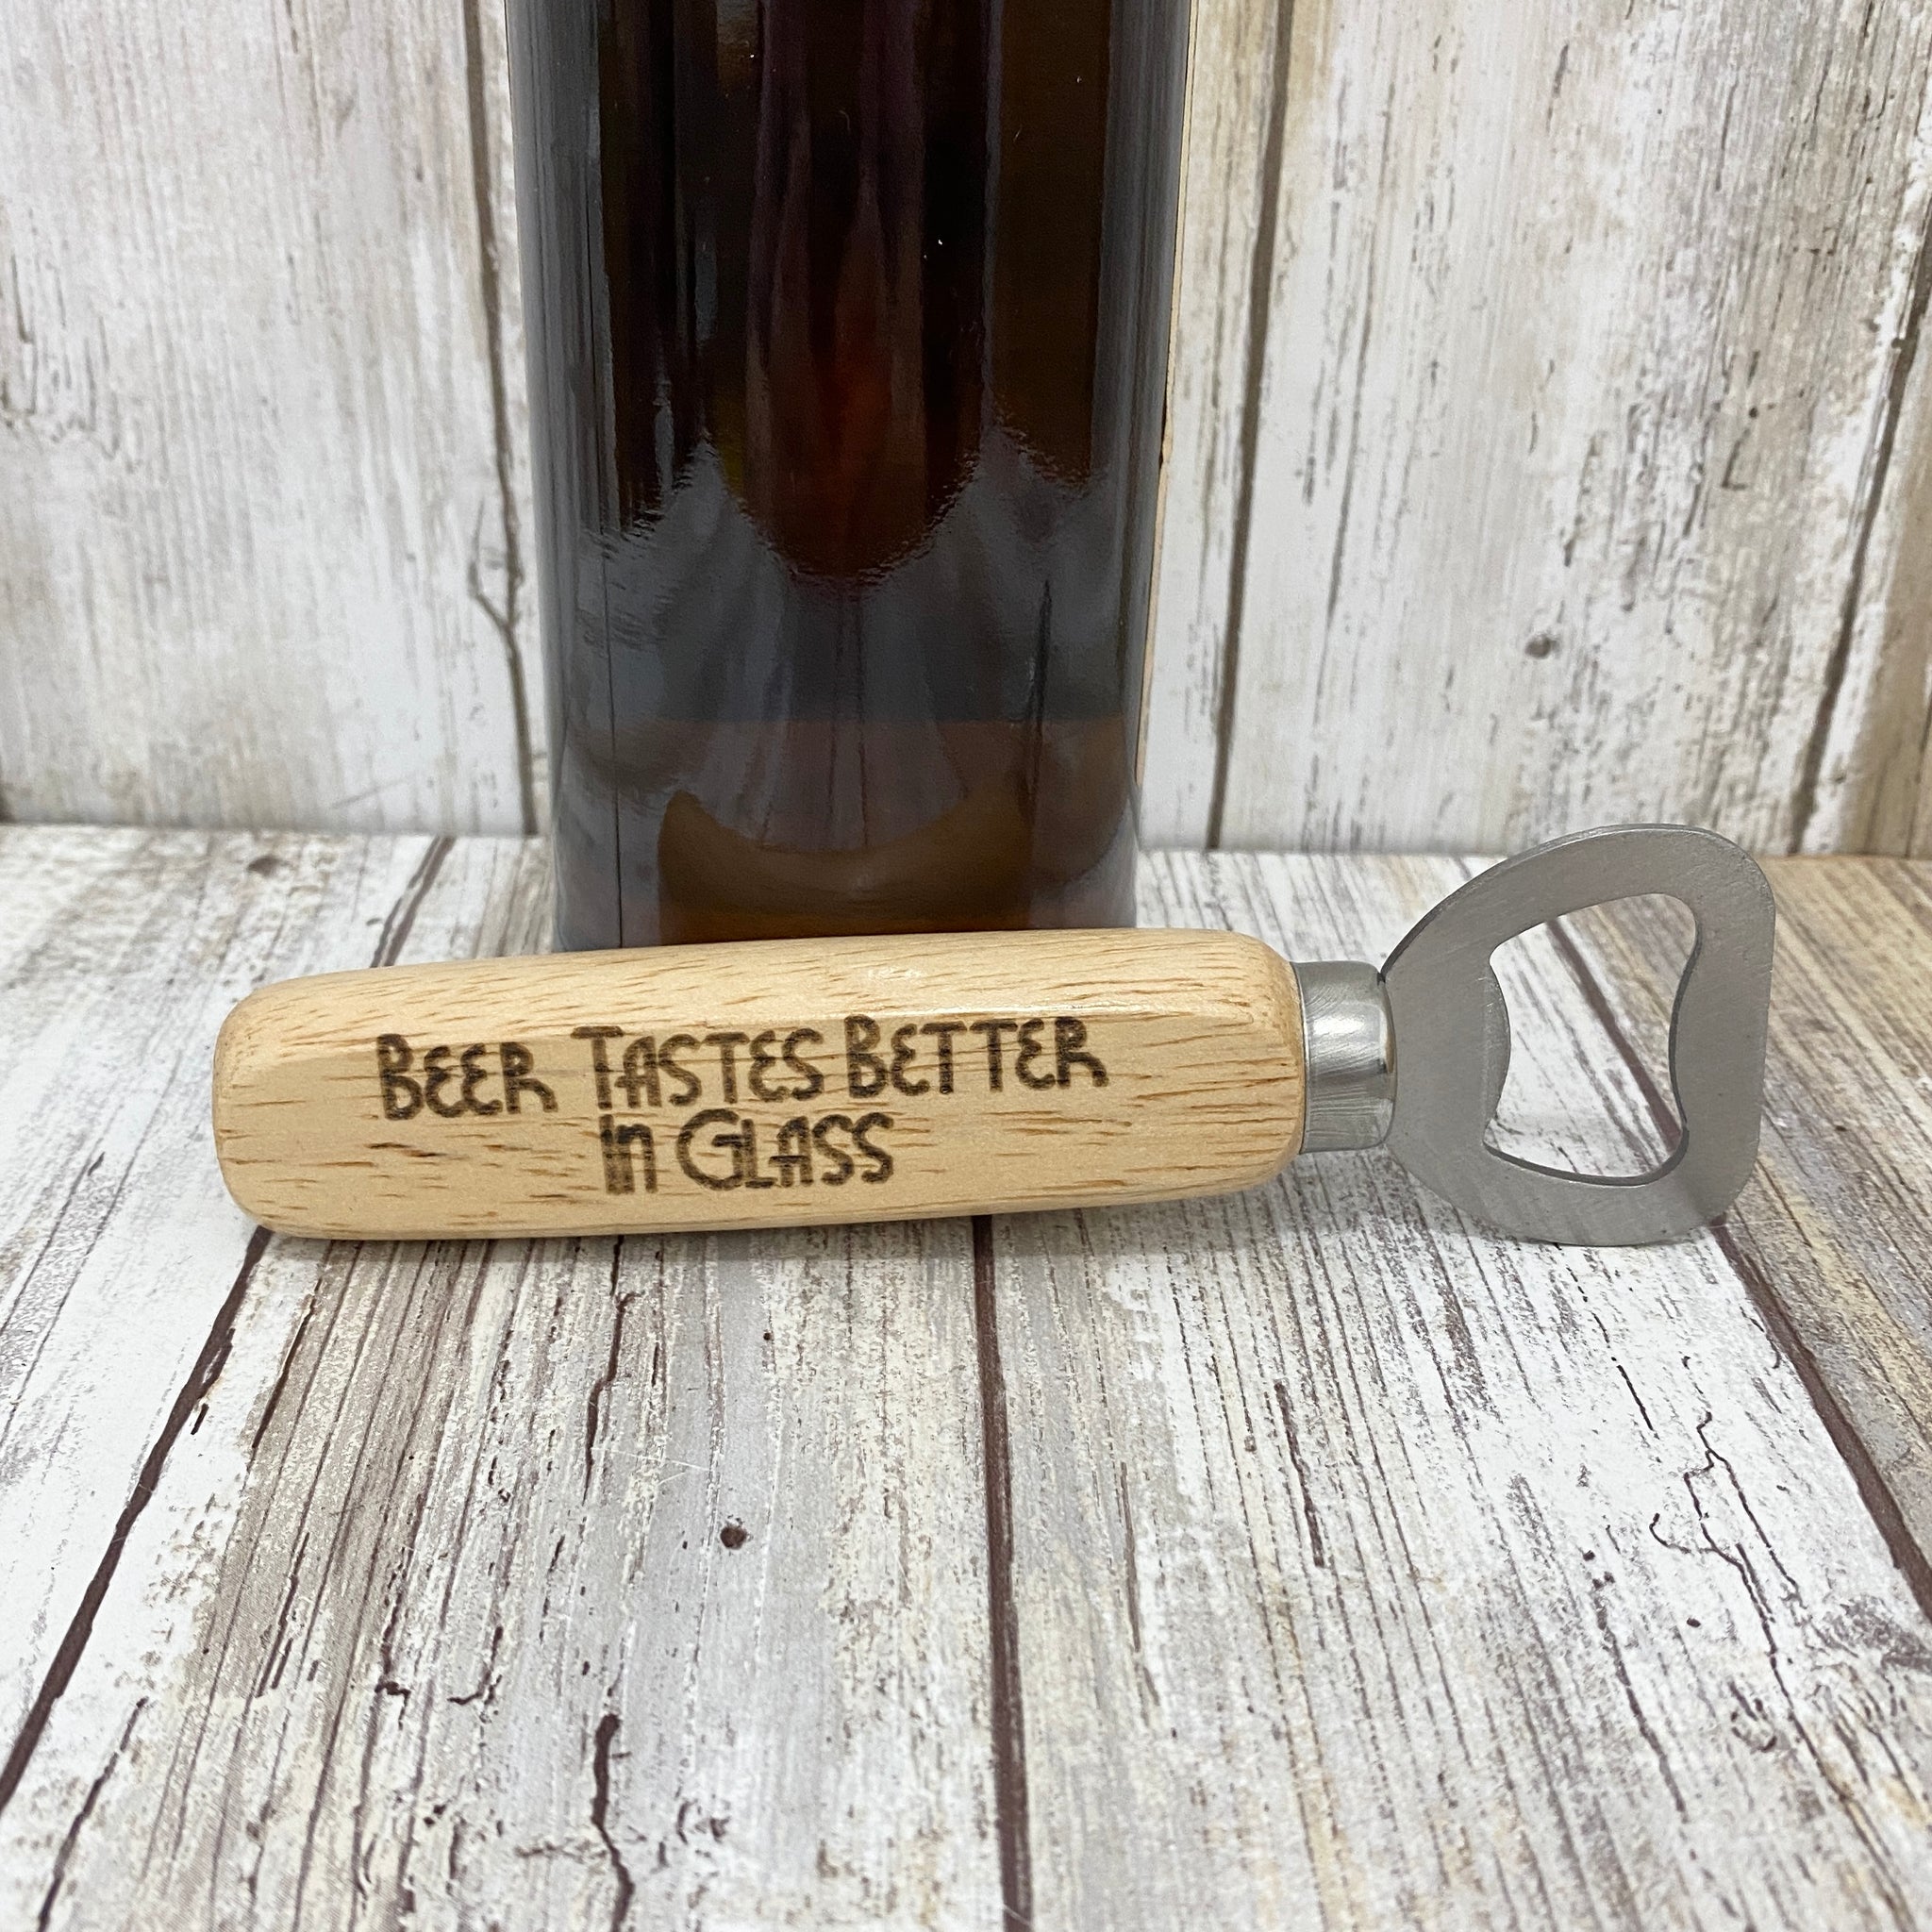 Beer Tastes Better in Glass -  Wooden Handle Beer Bottle Opener